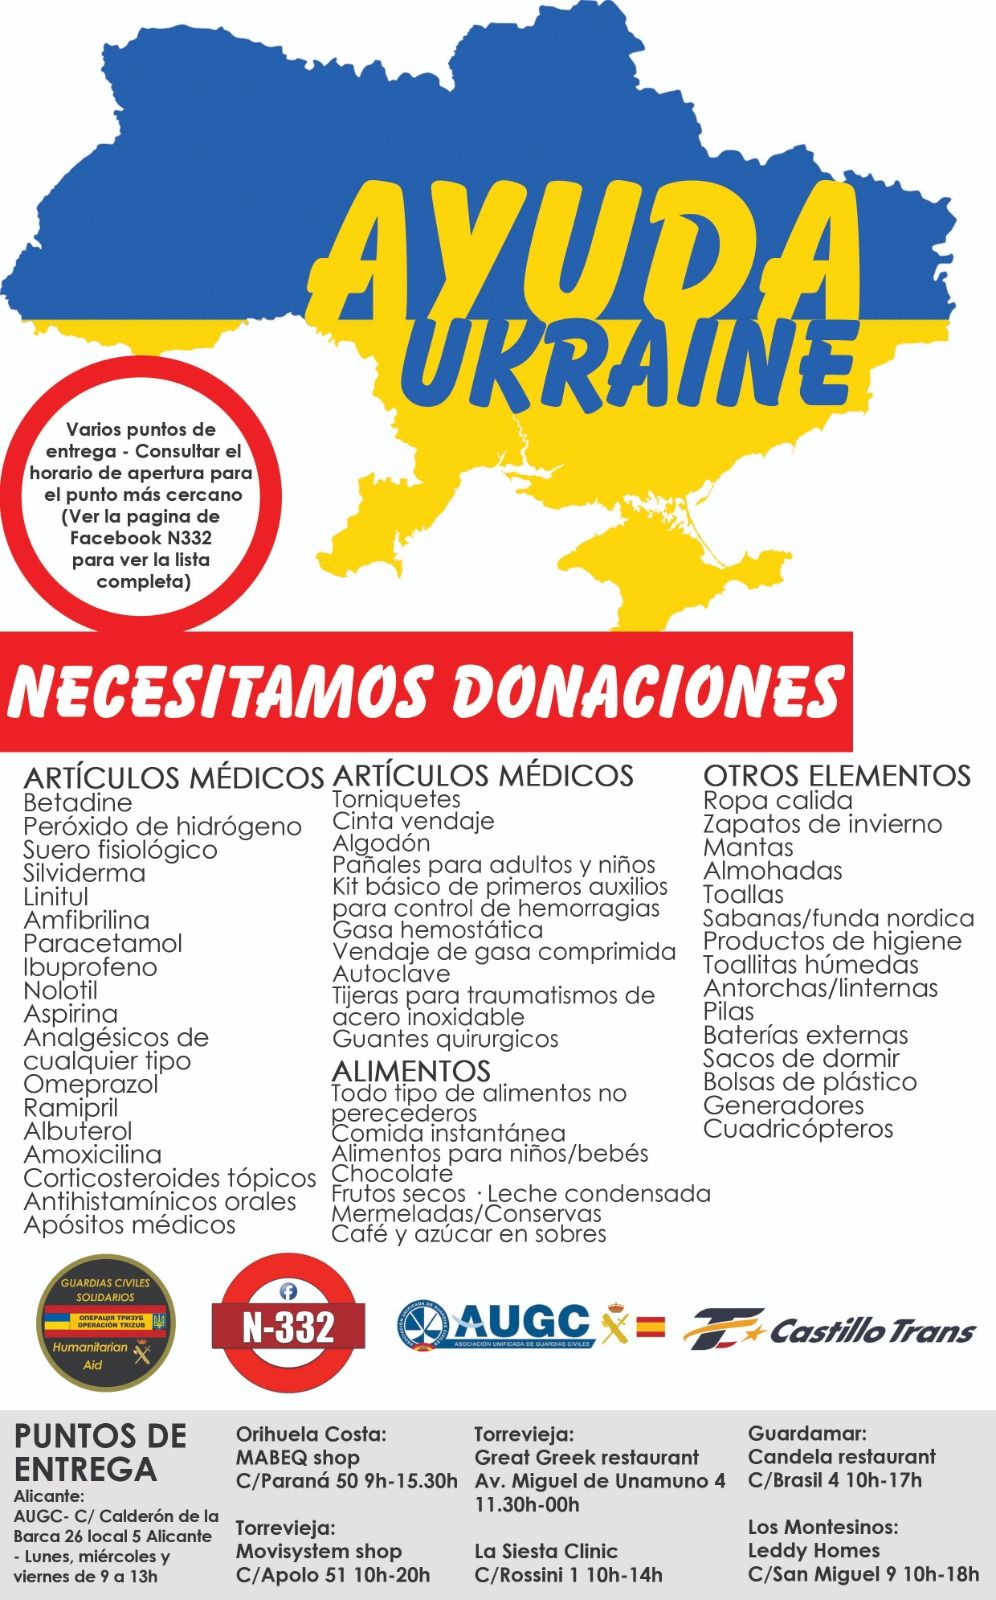 Cartel de la campaña de ayuda a refugiados de Ucrania.